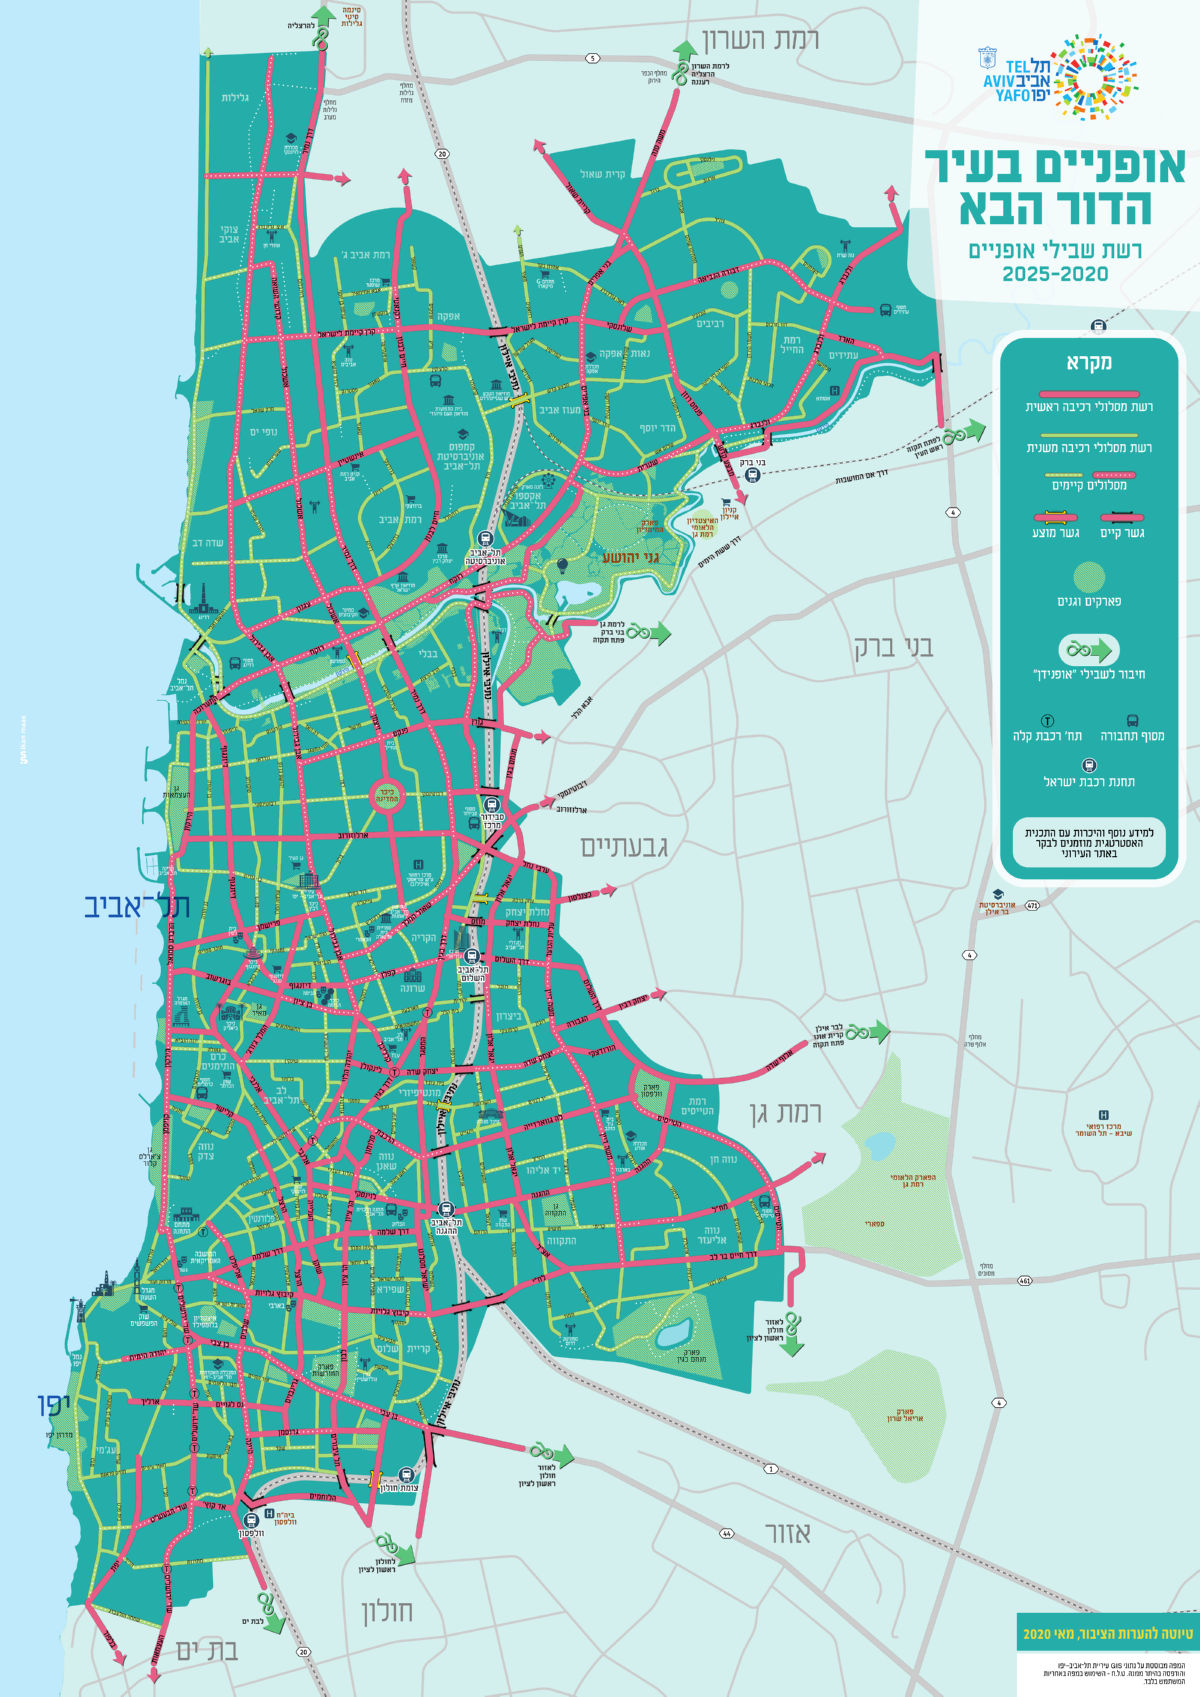 מפת רשת האופניים המתוכננת לשנת 2025 - טיוטה להערות הציבור מאי 2020